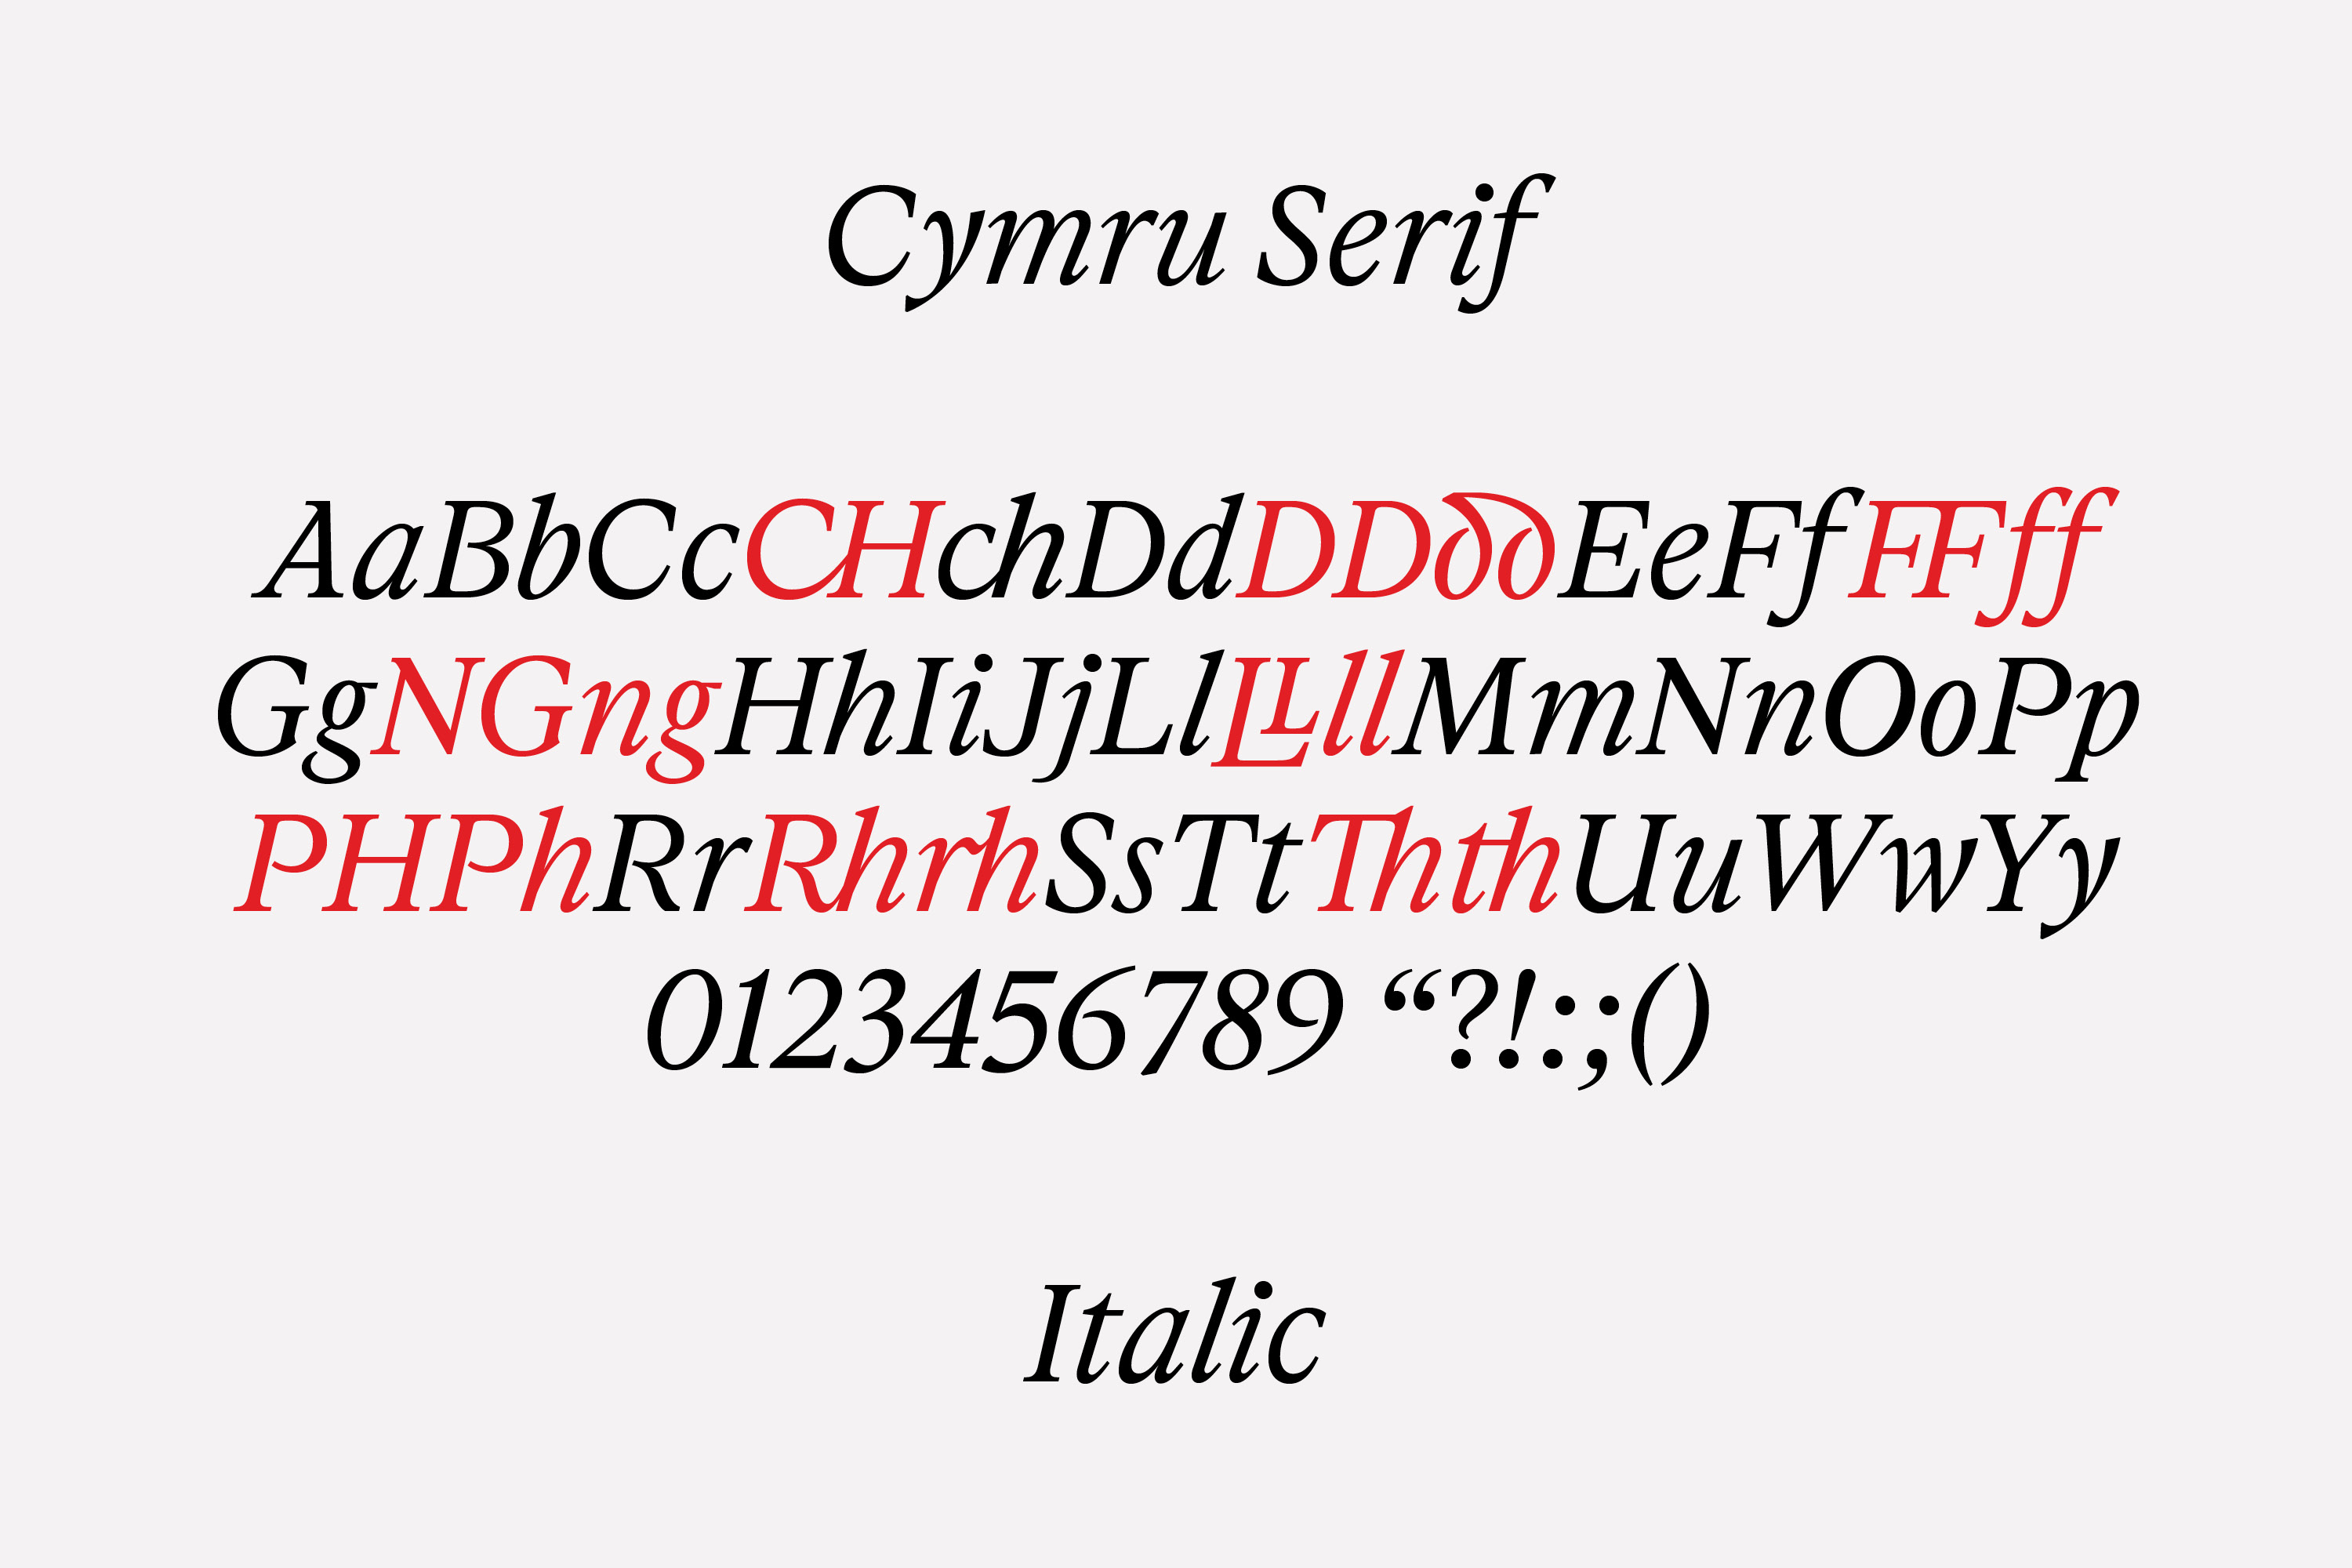 cymru serif italic